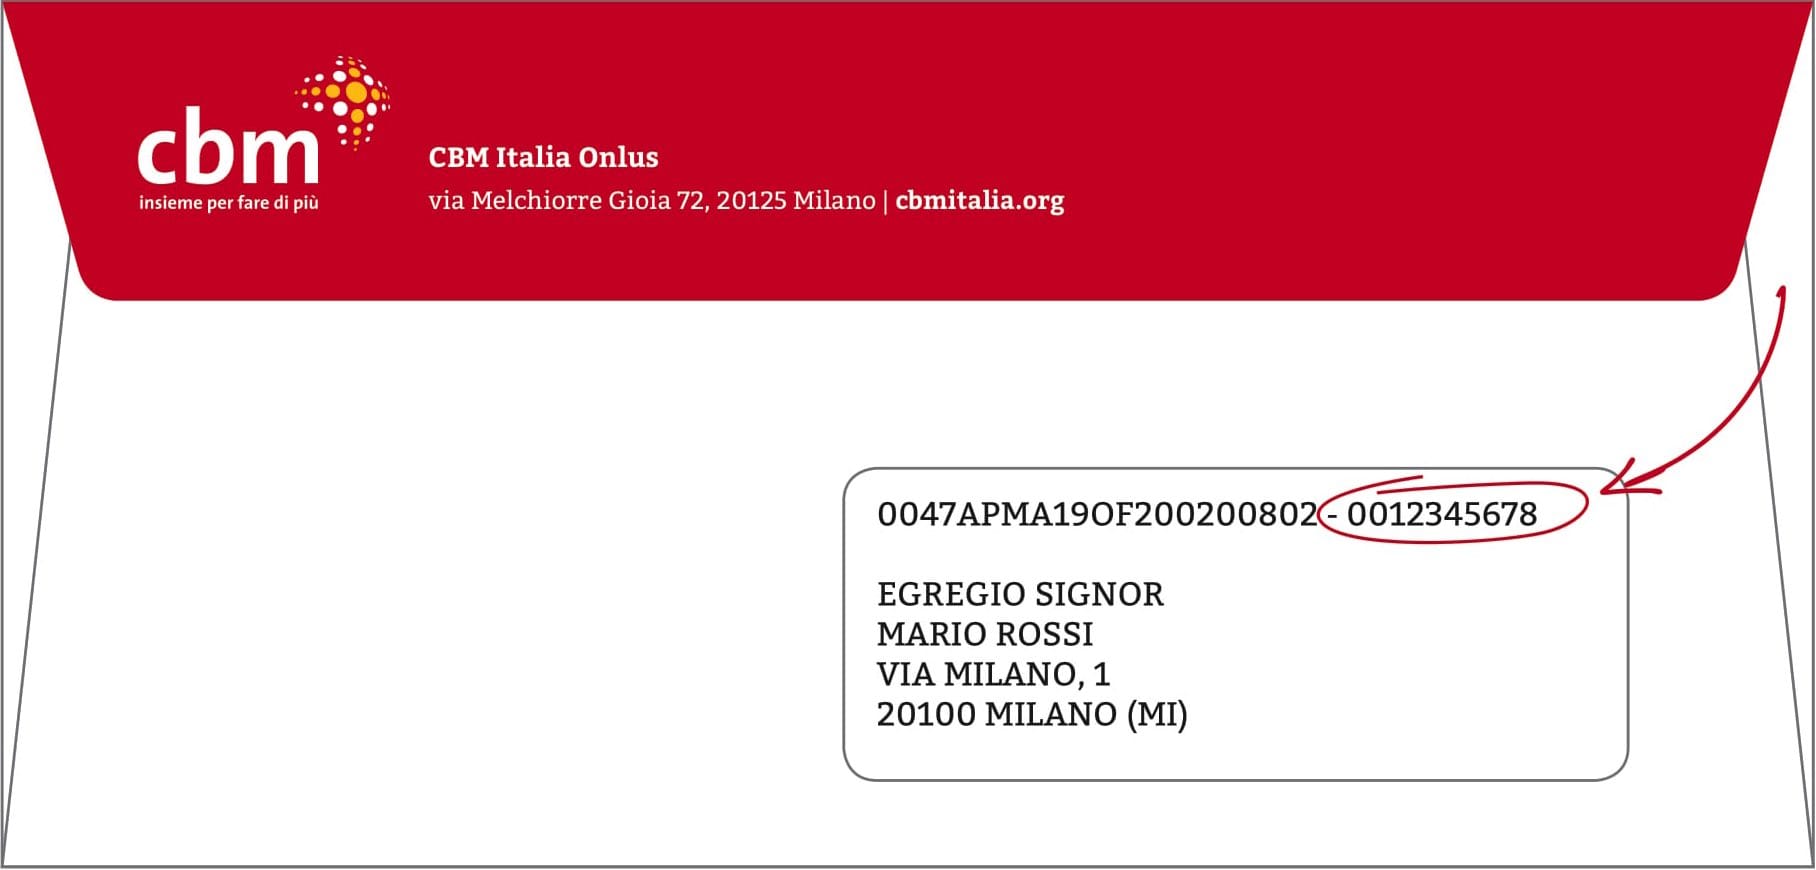 Puoi trovare il tuo "codice sostenitore" su tutte le comunicazioni che vengono inviate via posta da CBM Italia Onlus.